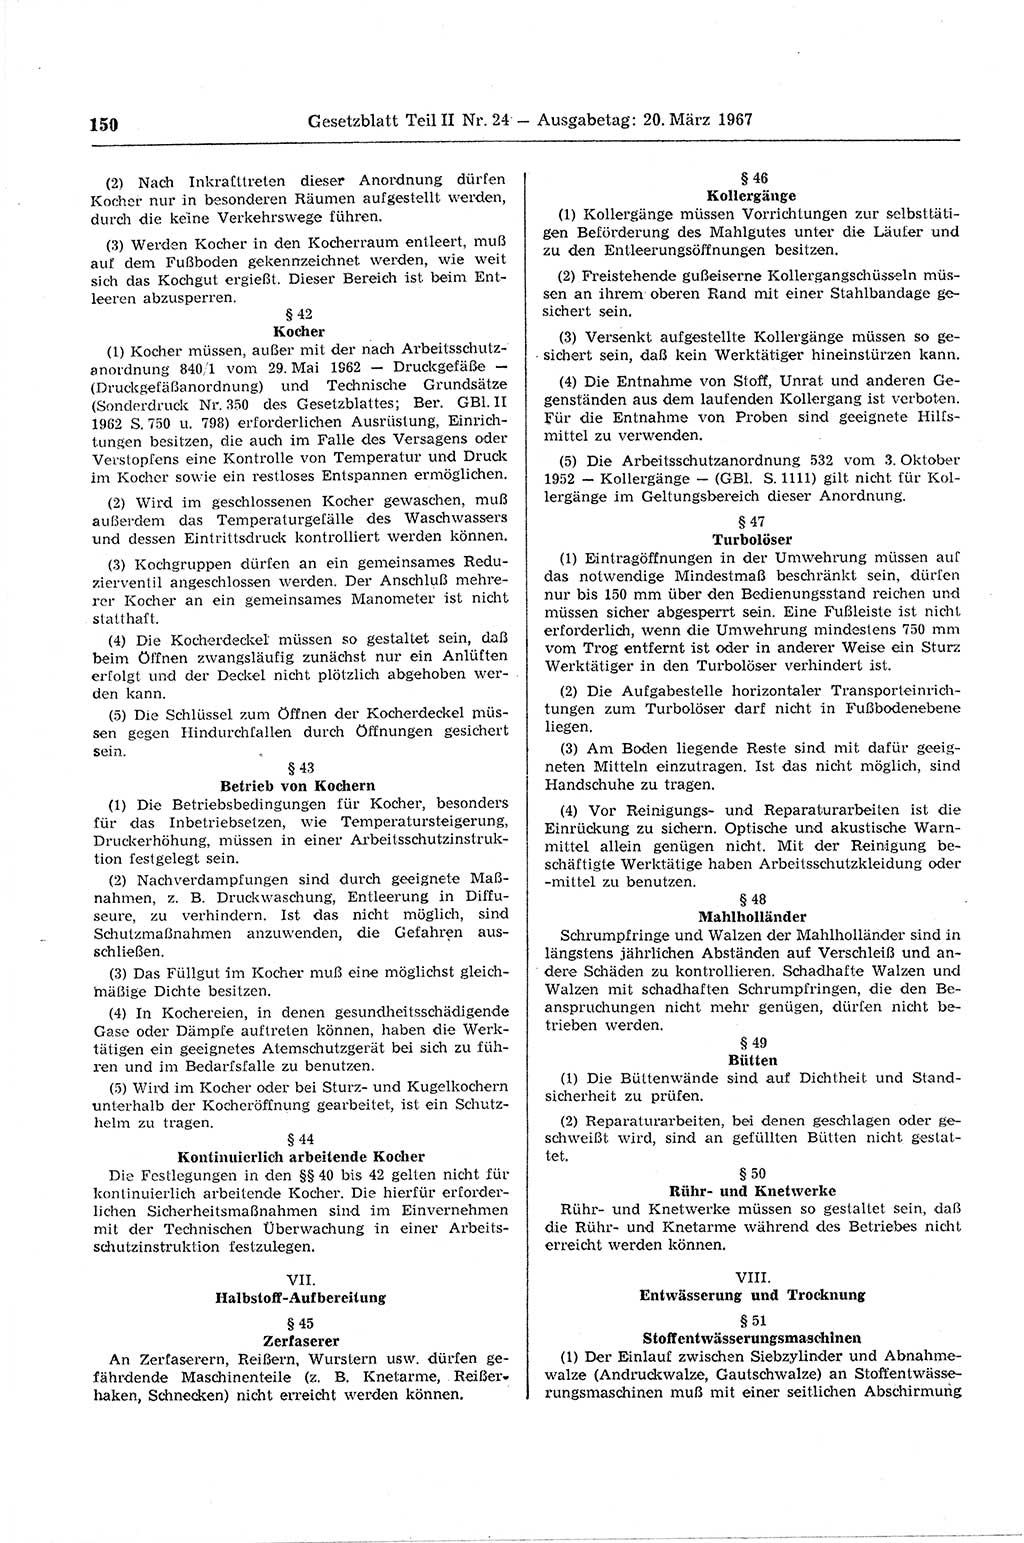 Gesetzblatt (GBl.) der Deutschen Demokratischen Republik (DDR) Teil ⅠⅠ 1967, Seite 150 (GBl. DDR ⅠⅠ 1967, S. 150)